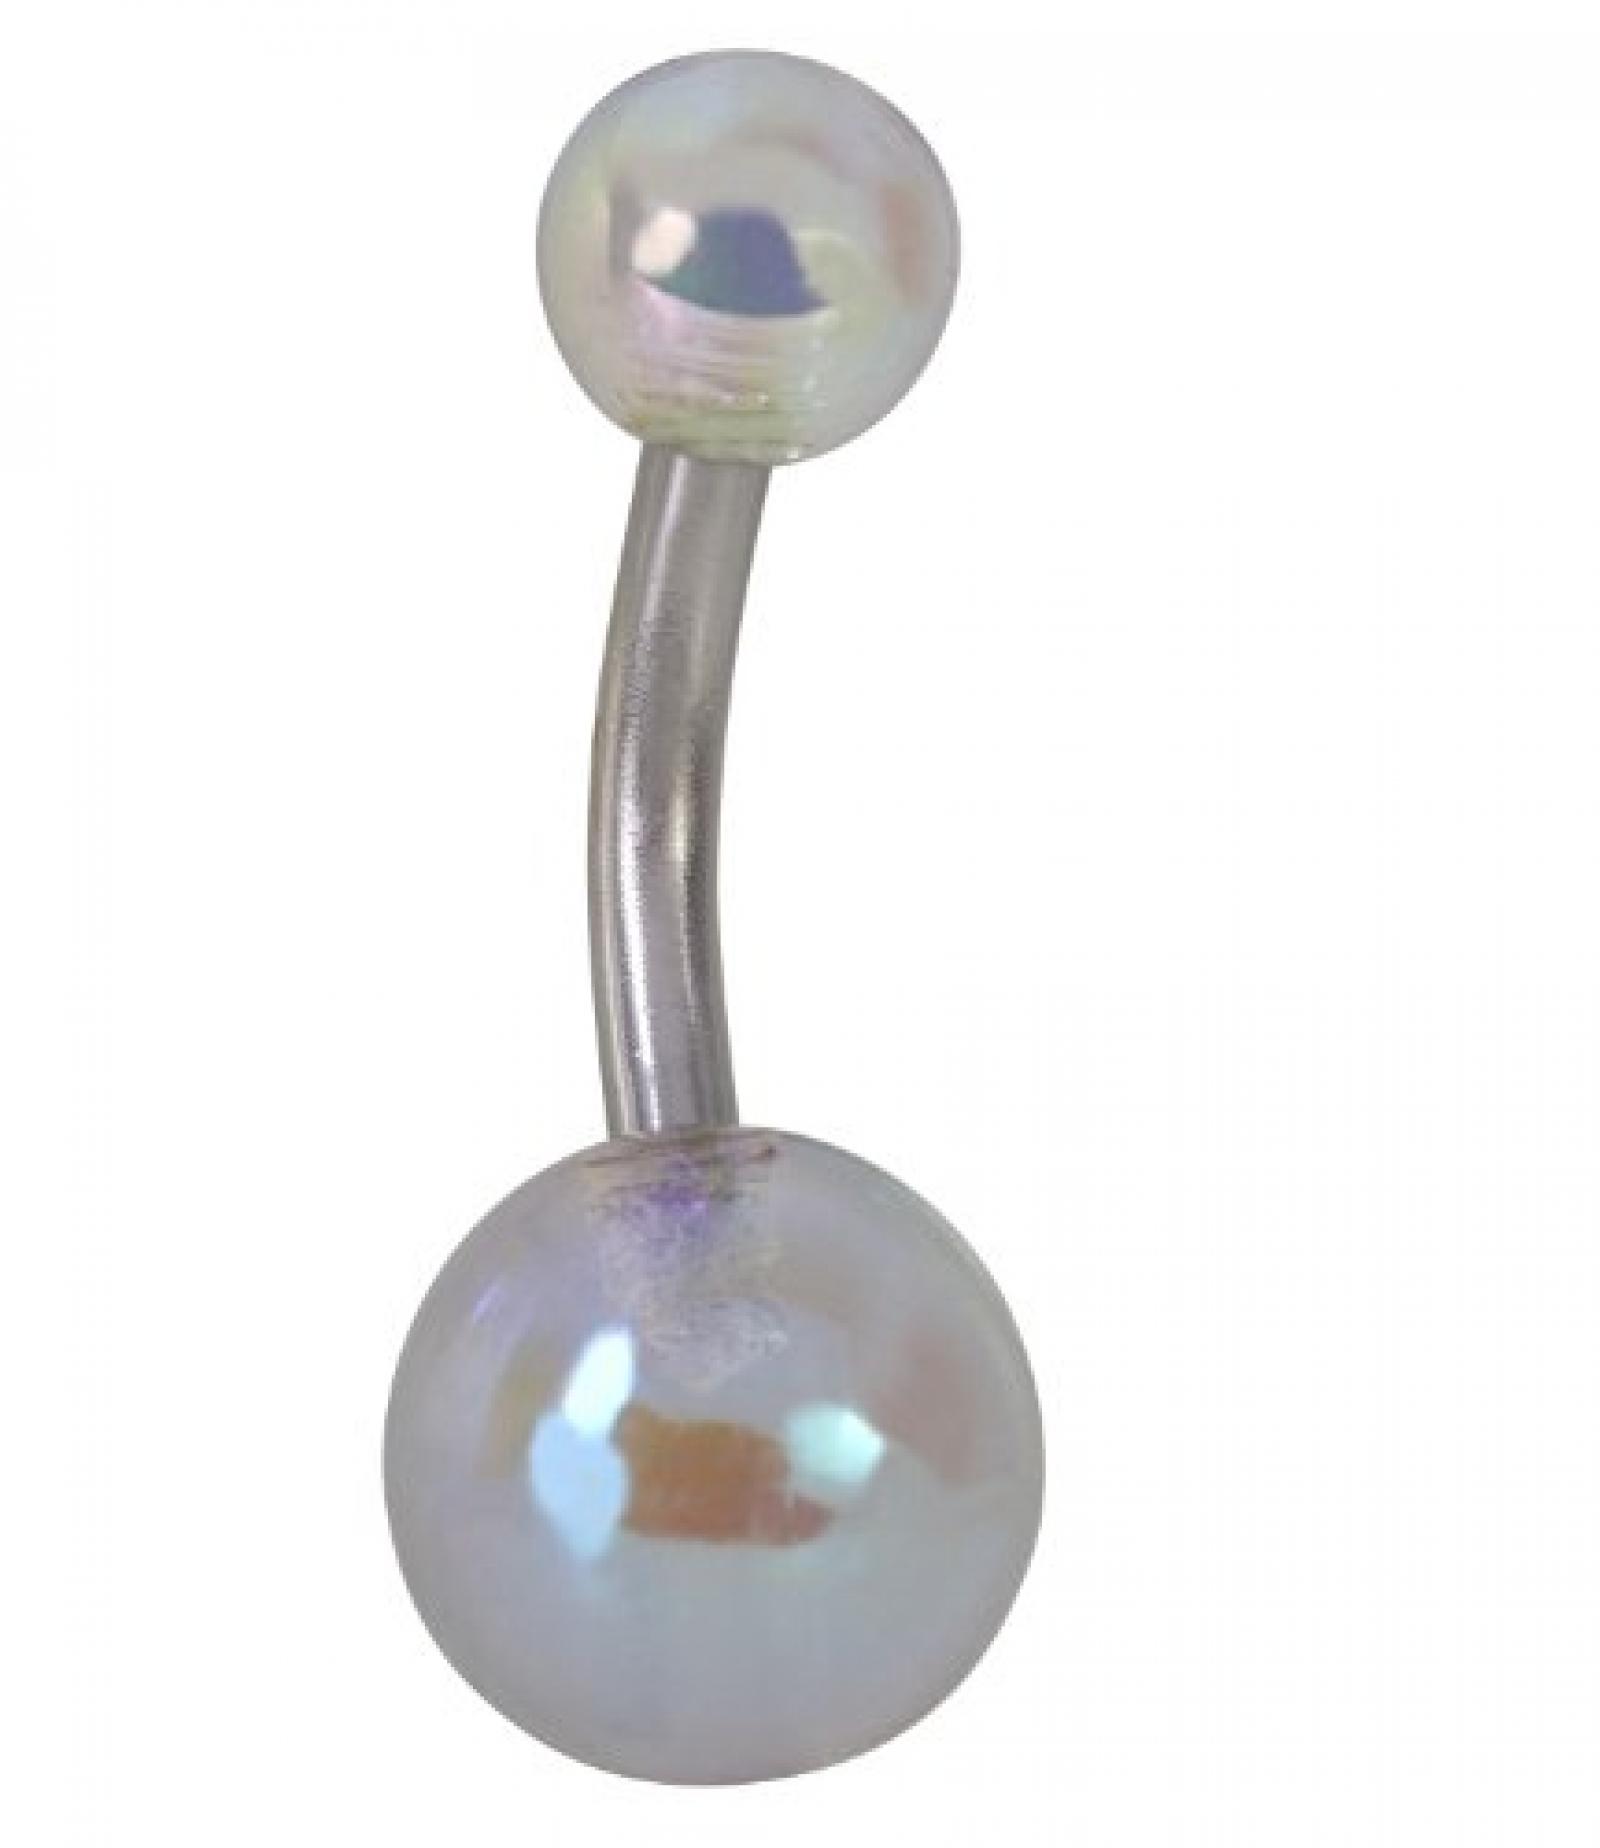 SIX Bauchnabel-Piercing mit transparent schimmernden Kugeln (269-305) 